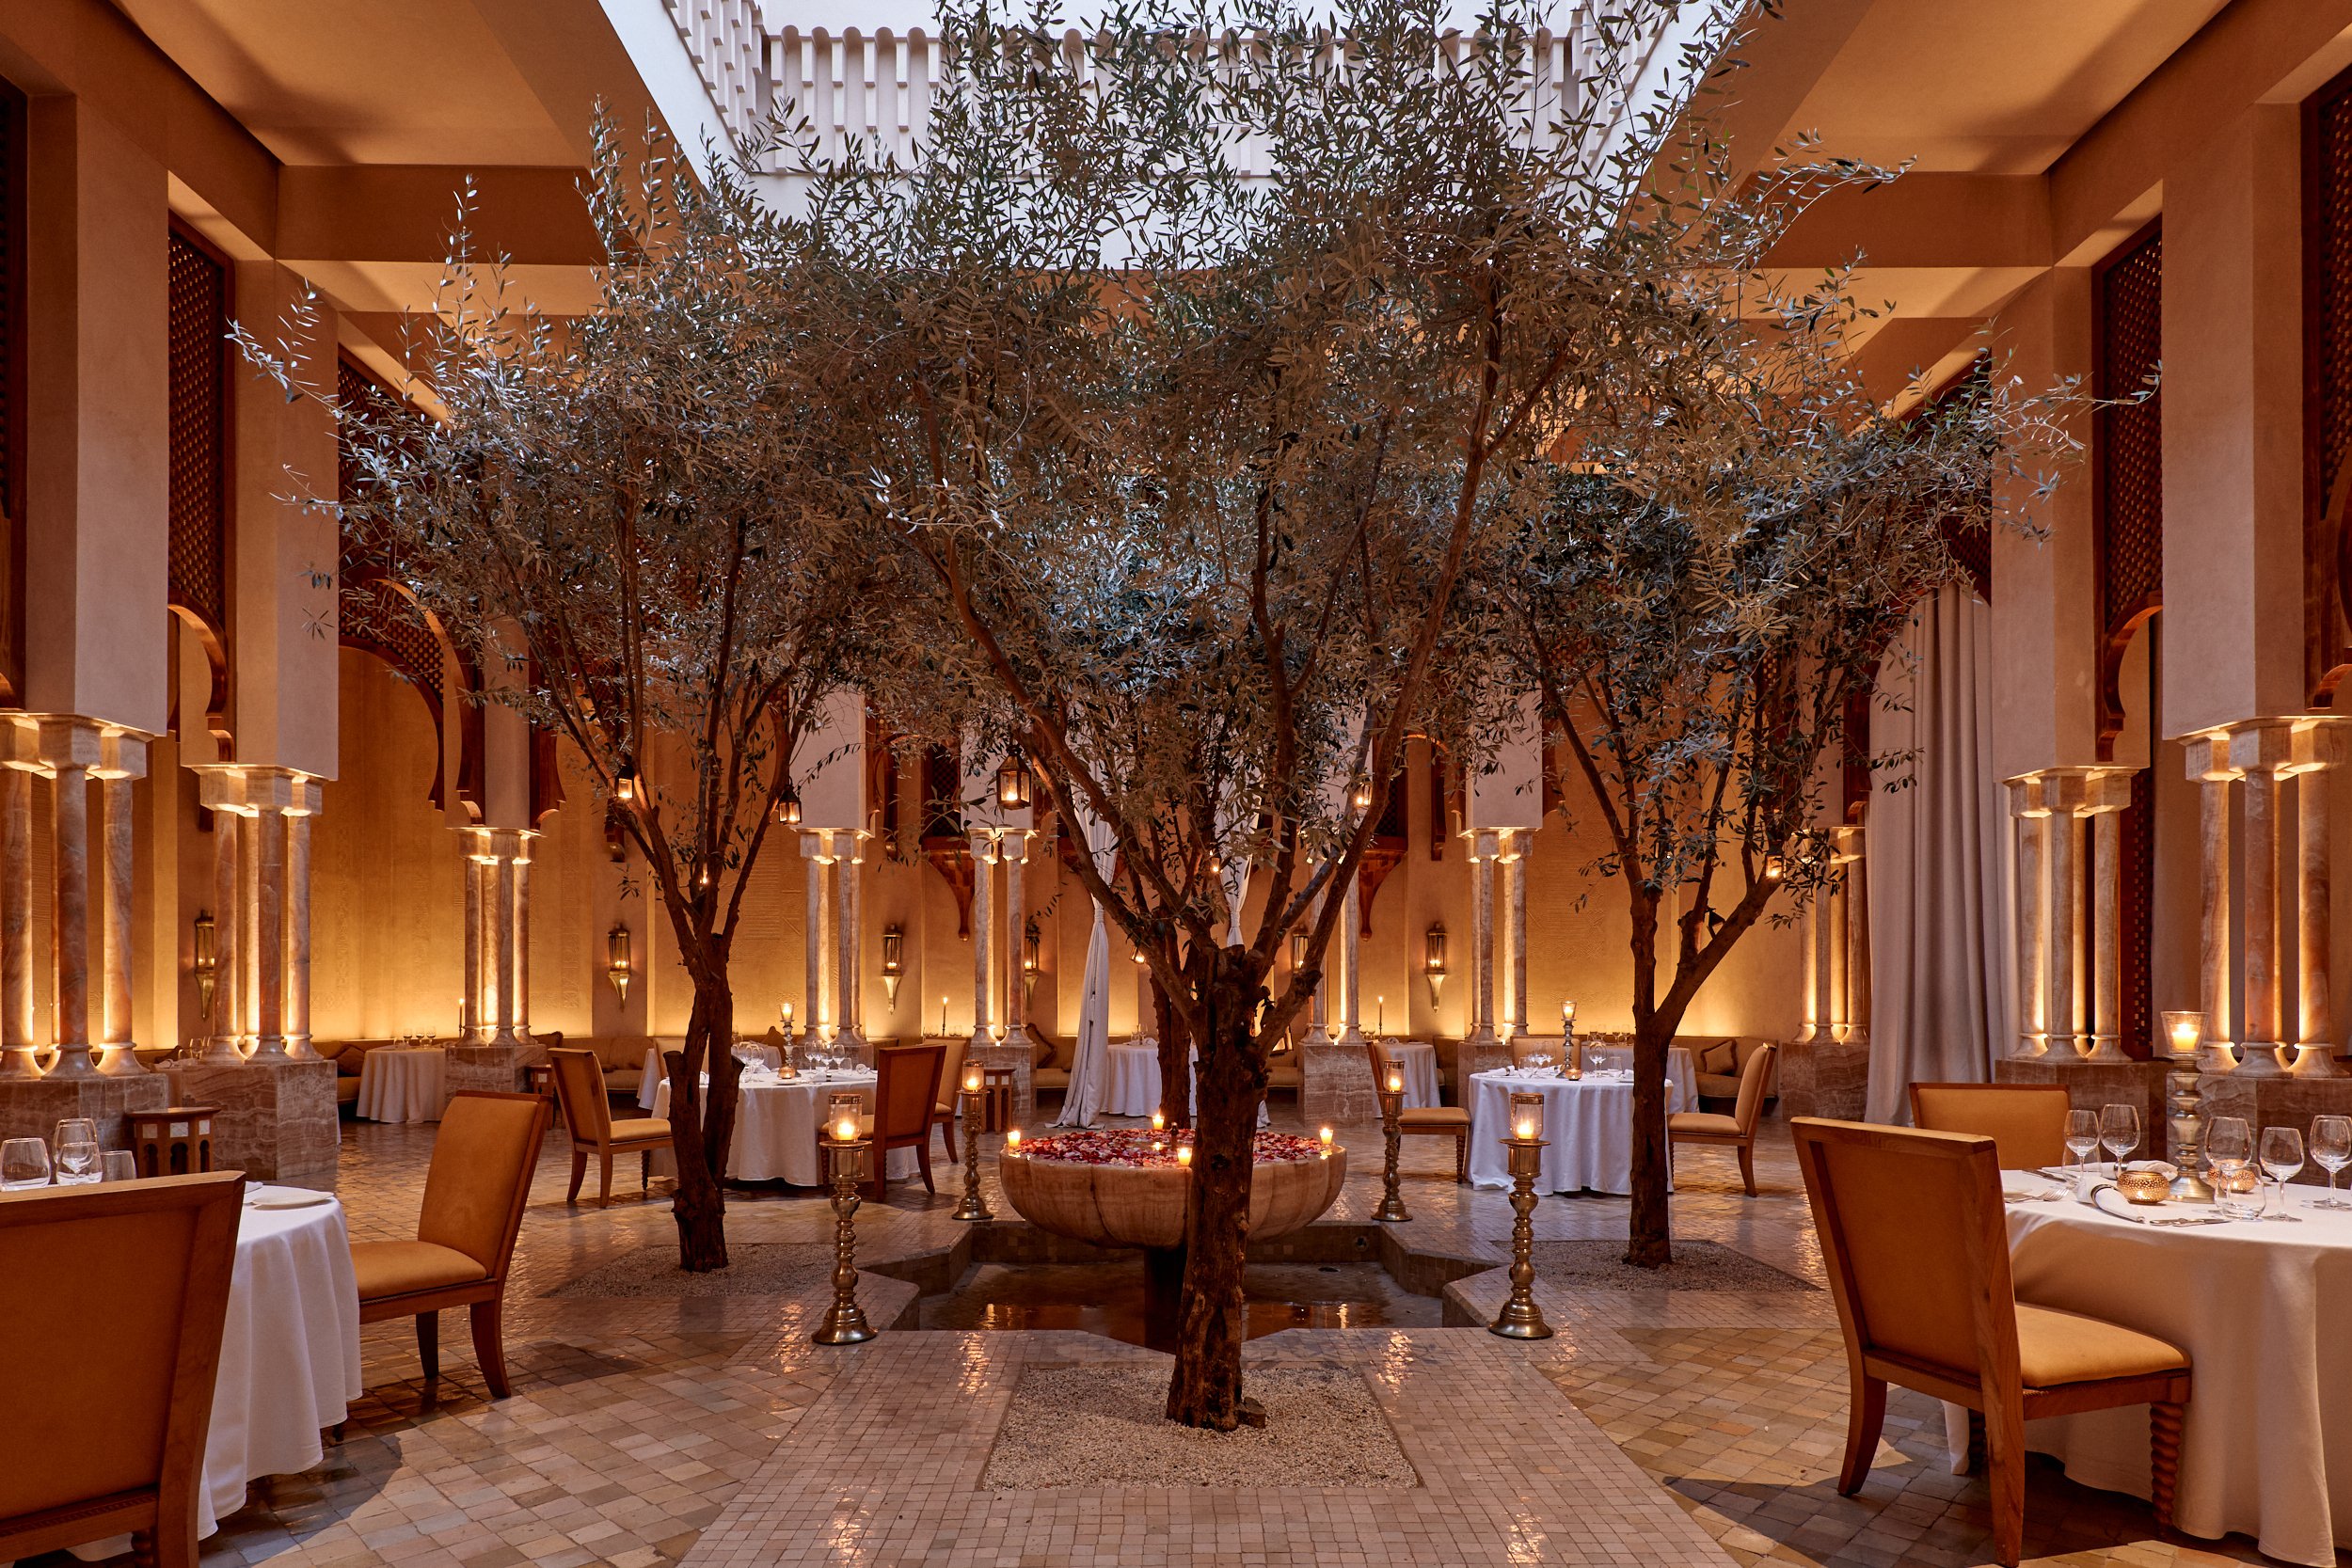 Romantisch restaurant met olijfbomen binnen.